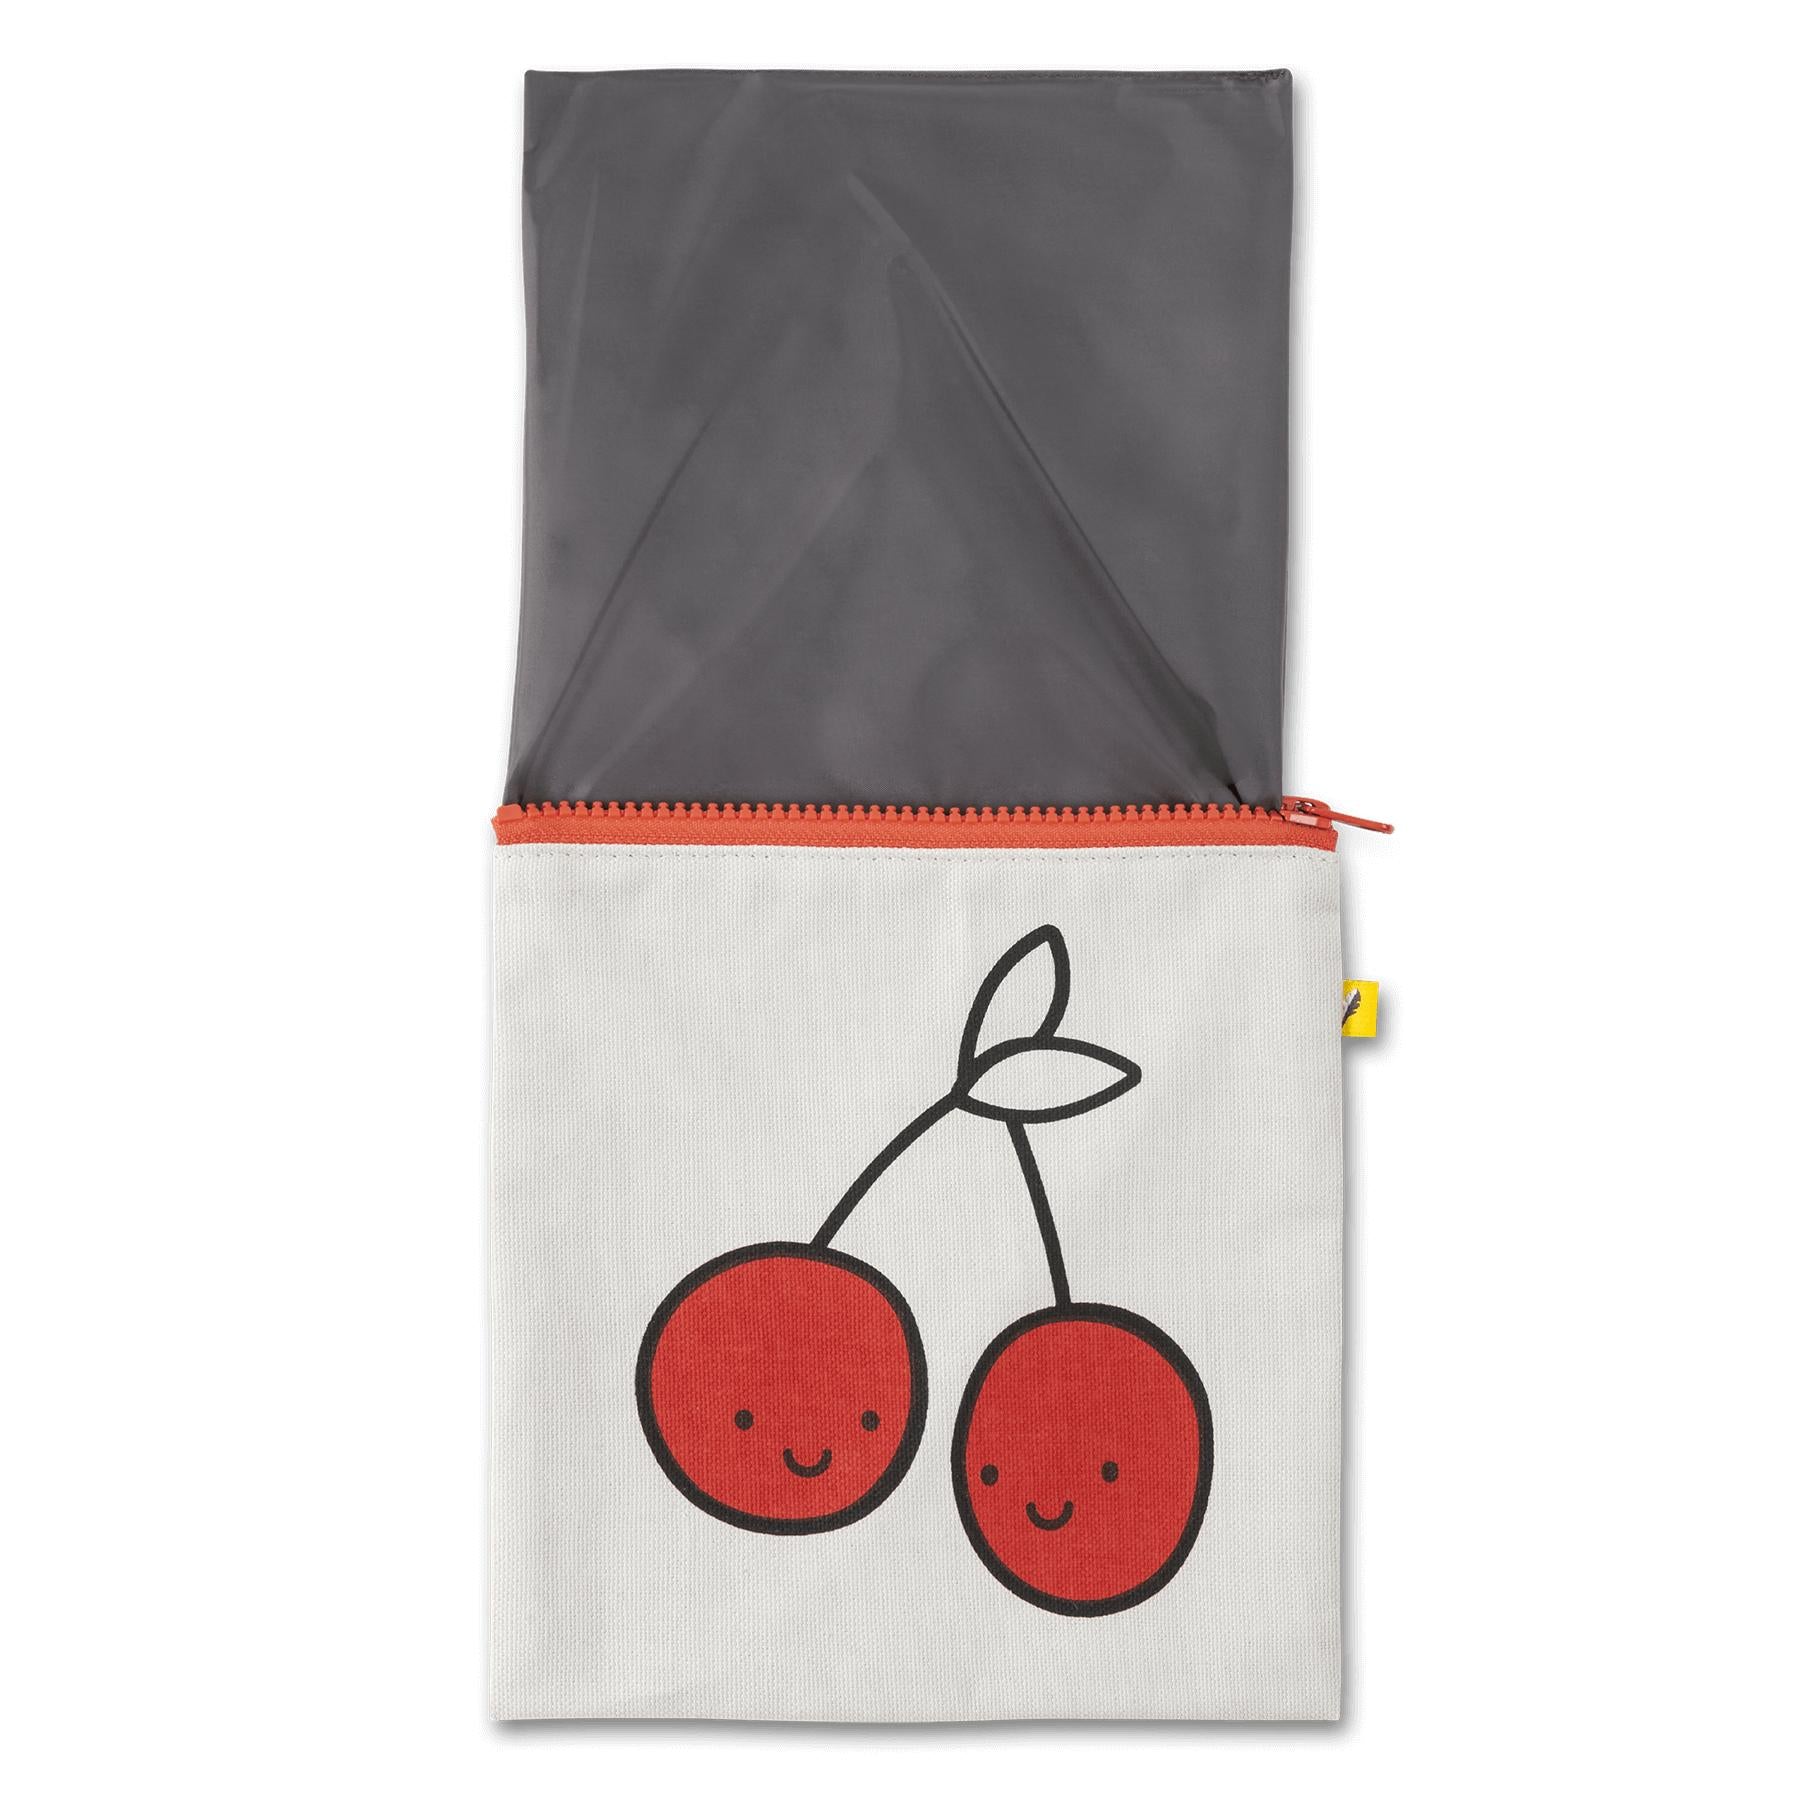 Zip Snack Bag - Cherries Red (Sandwich Size)